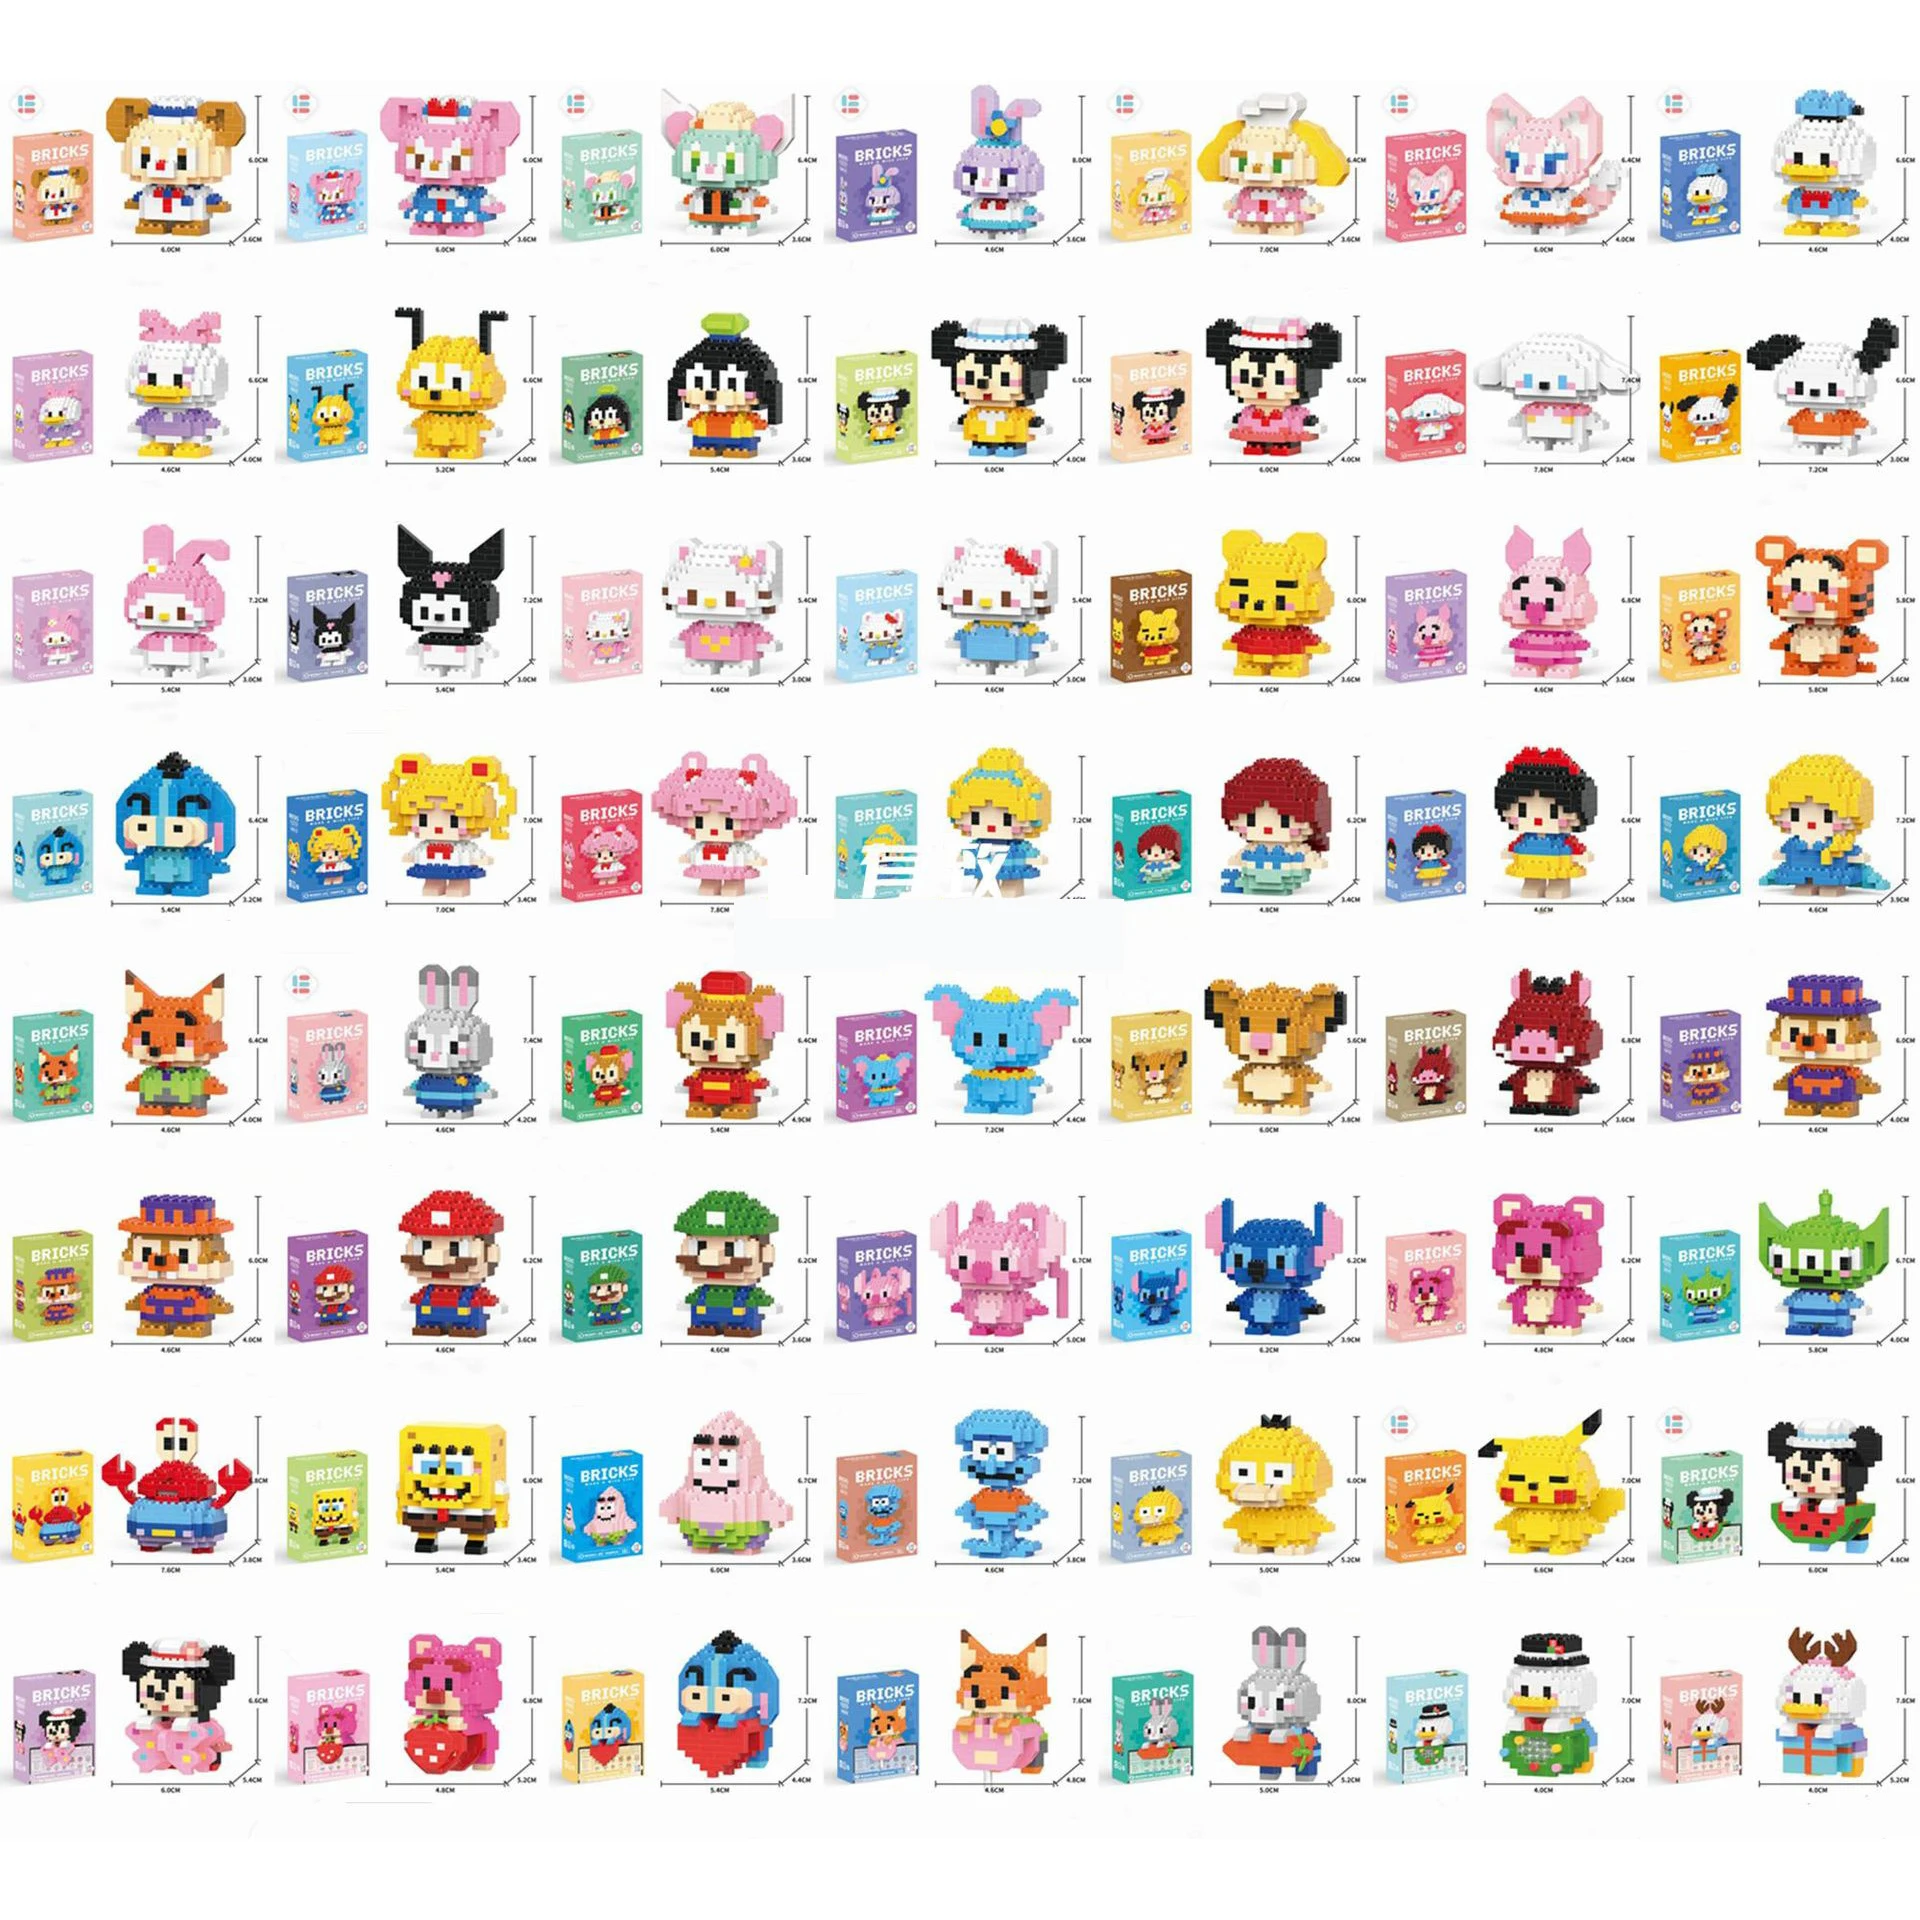 

Новые Фигурки героев аниме мультфильма Sanrio Pokemon, персонажи персонажей из конструктора Kuromi Hellokitty, мини сборные кирпичи, модели кукол, игрушки, подарки